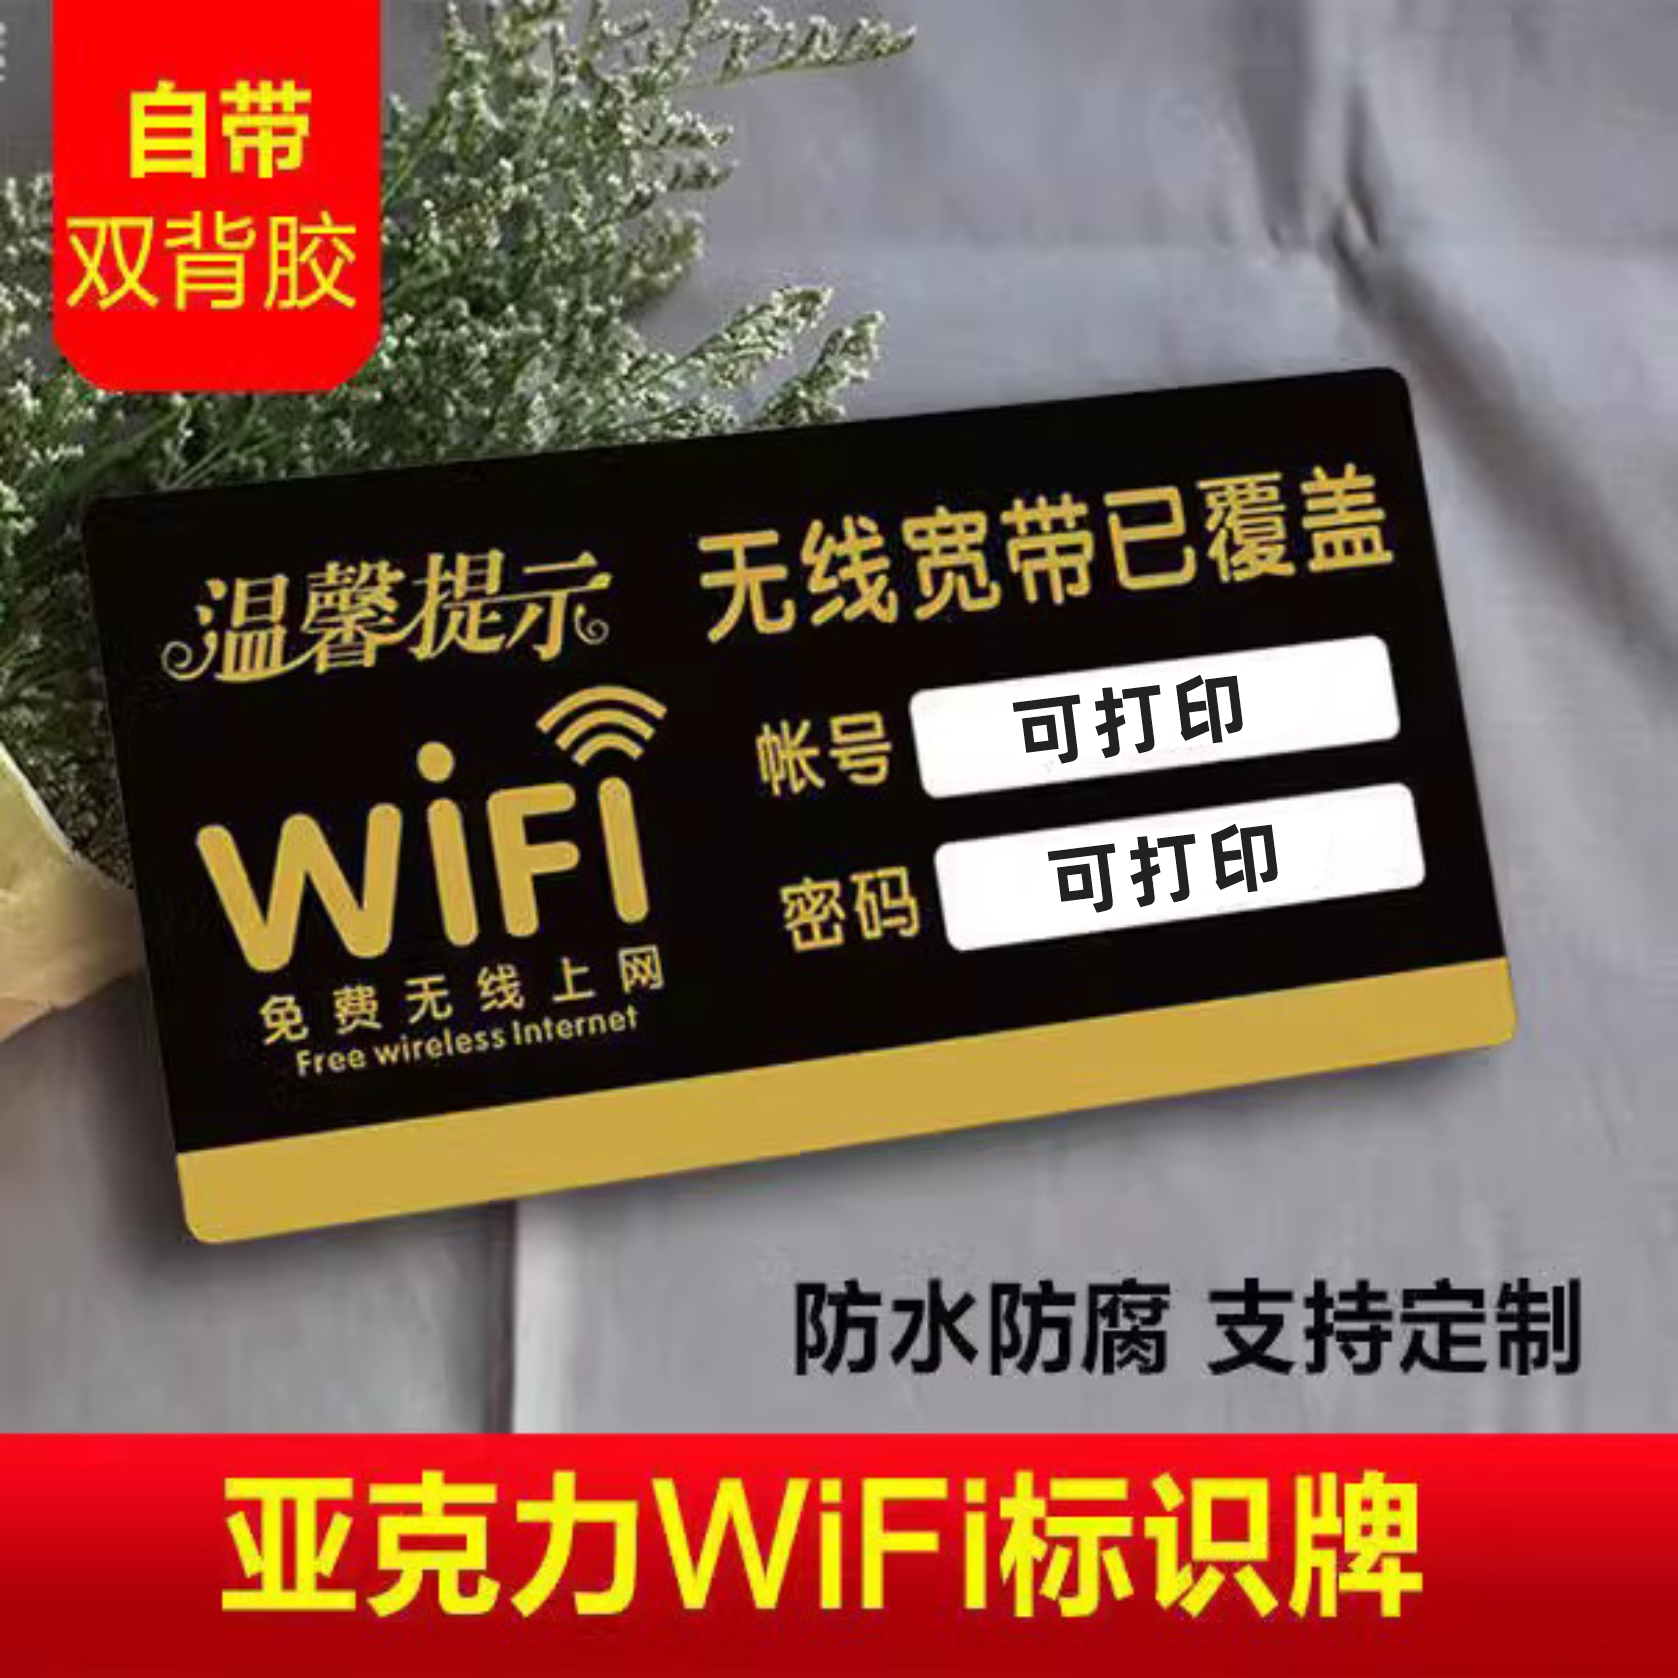 WIFI密码提示牌免费无线网络覆盖免费WIFi牌创意牌温馨提示标识牌